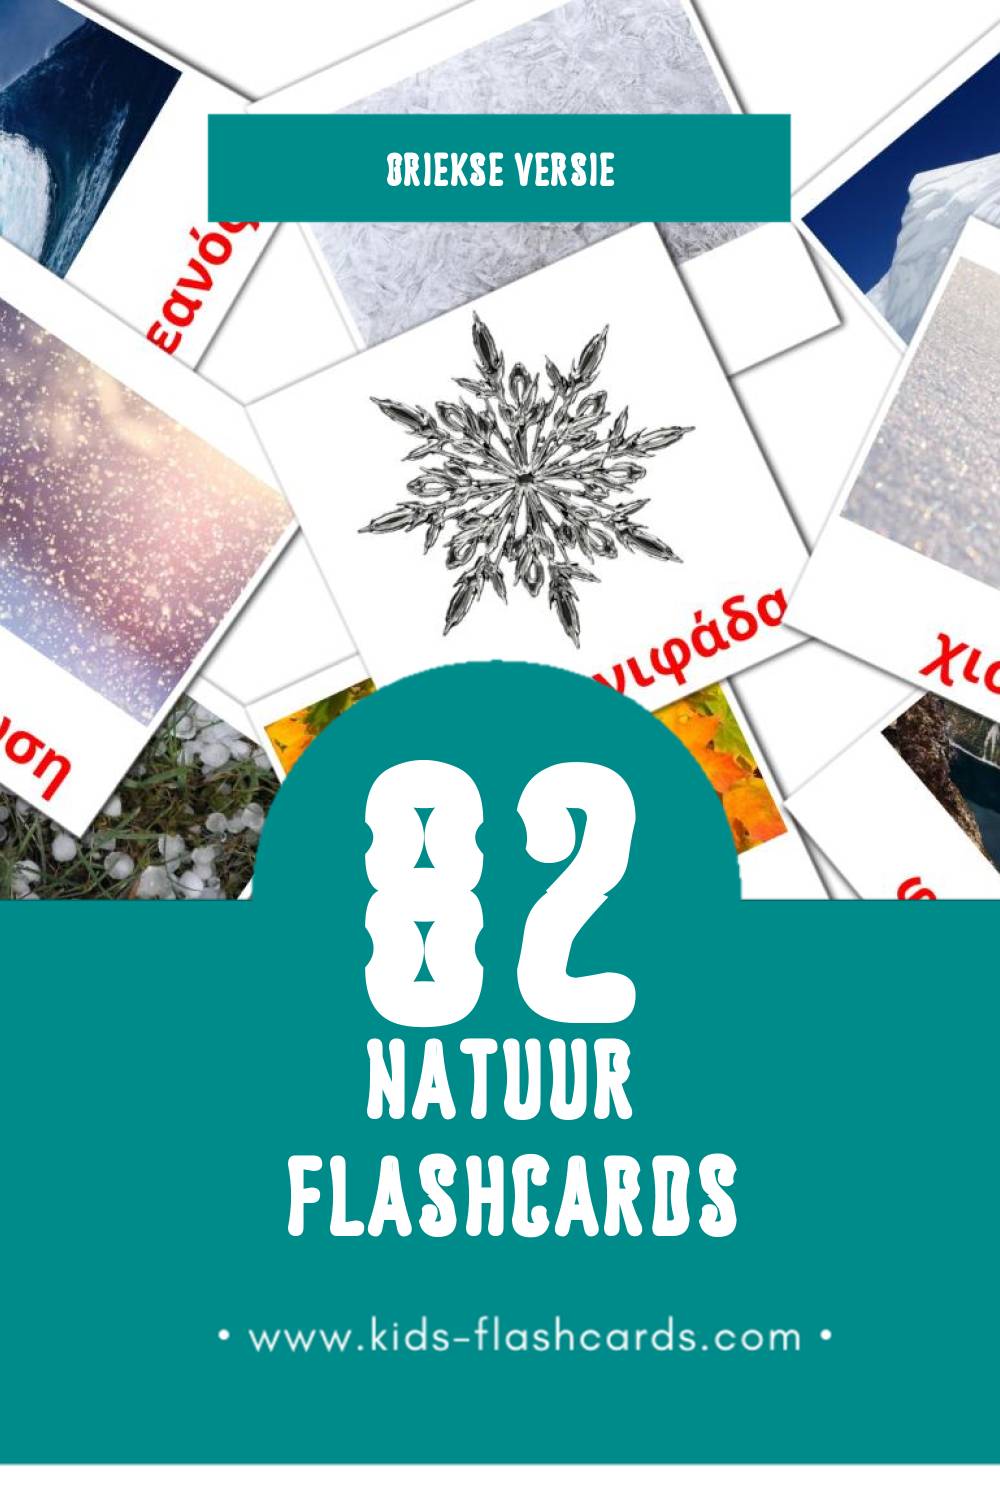 Visuele Φύση Flashcards voor Kleuters (82 kaarten in het Grieks)